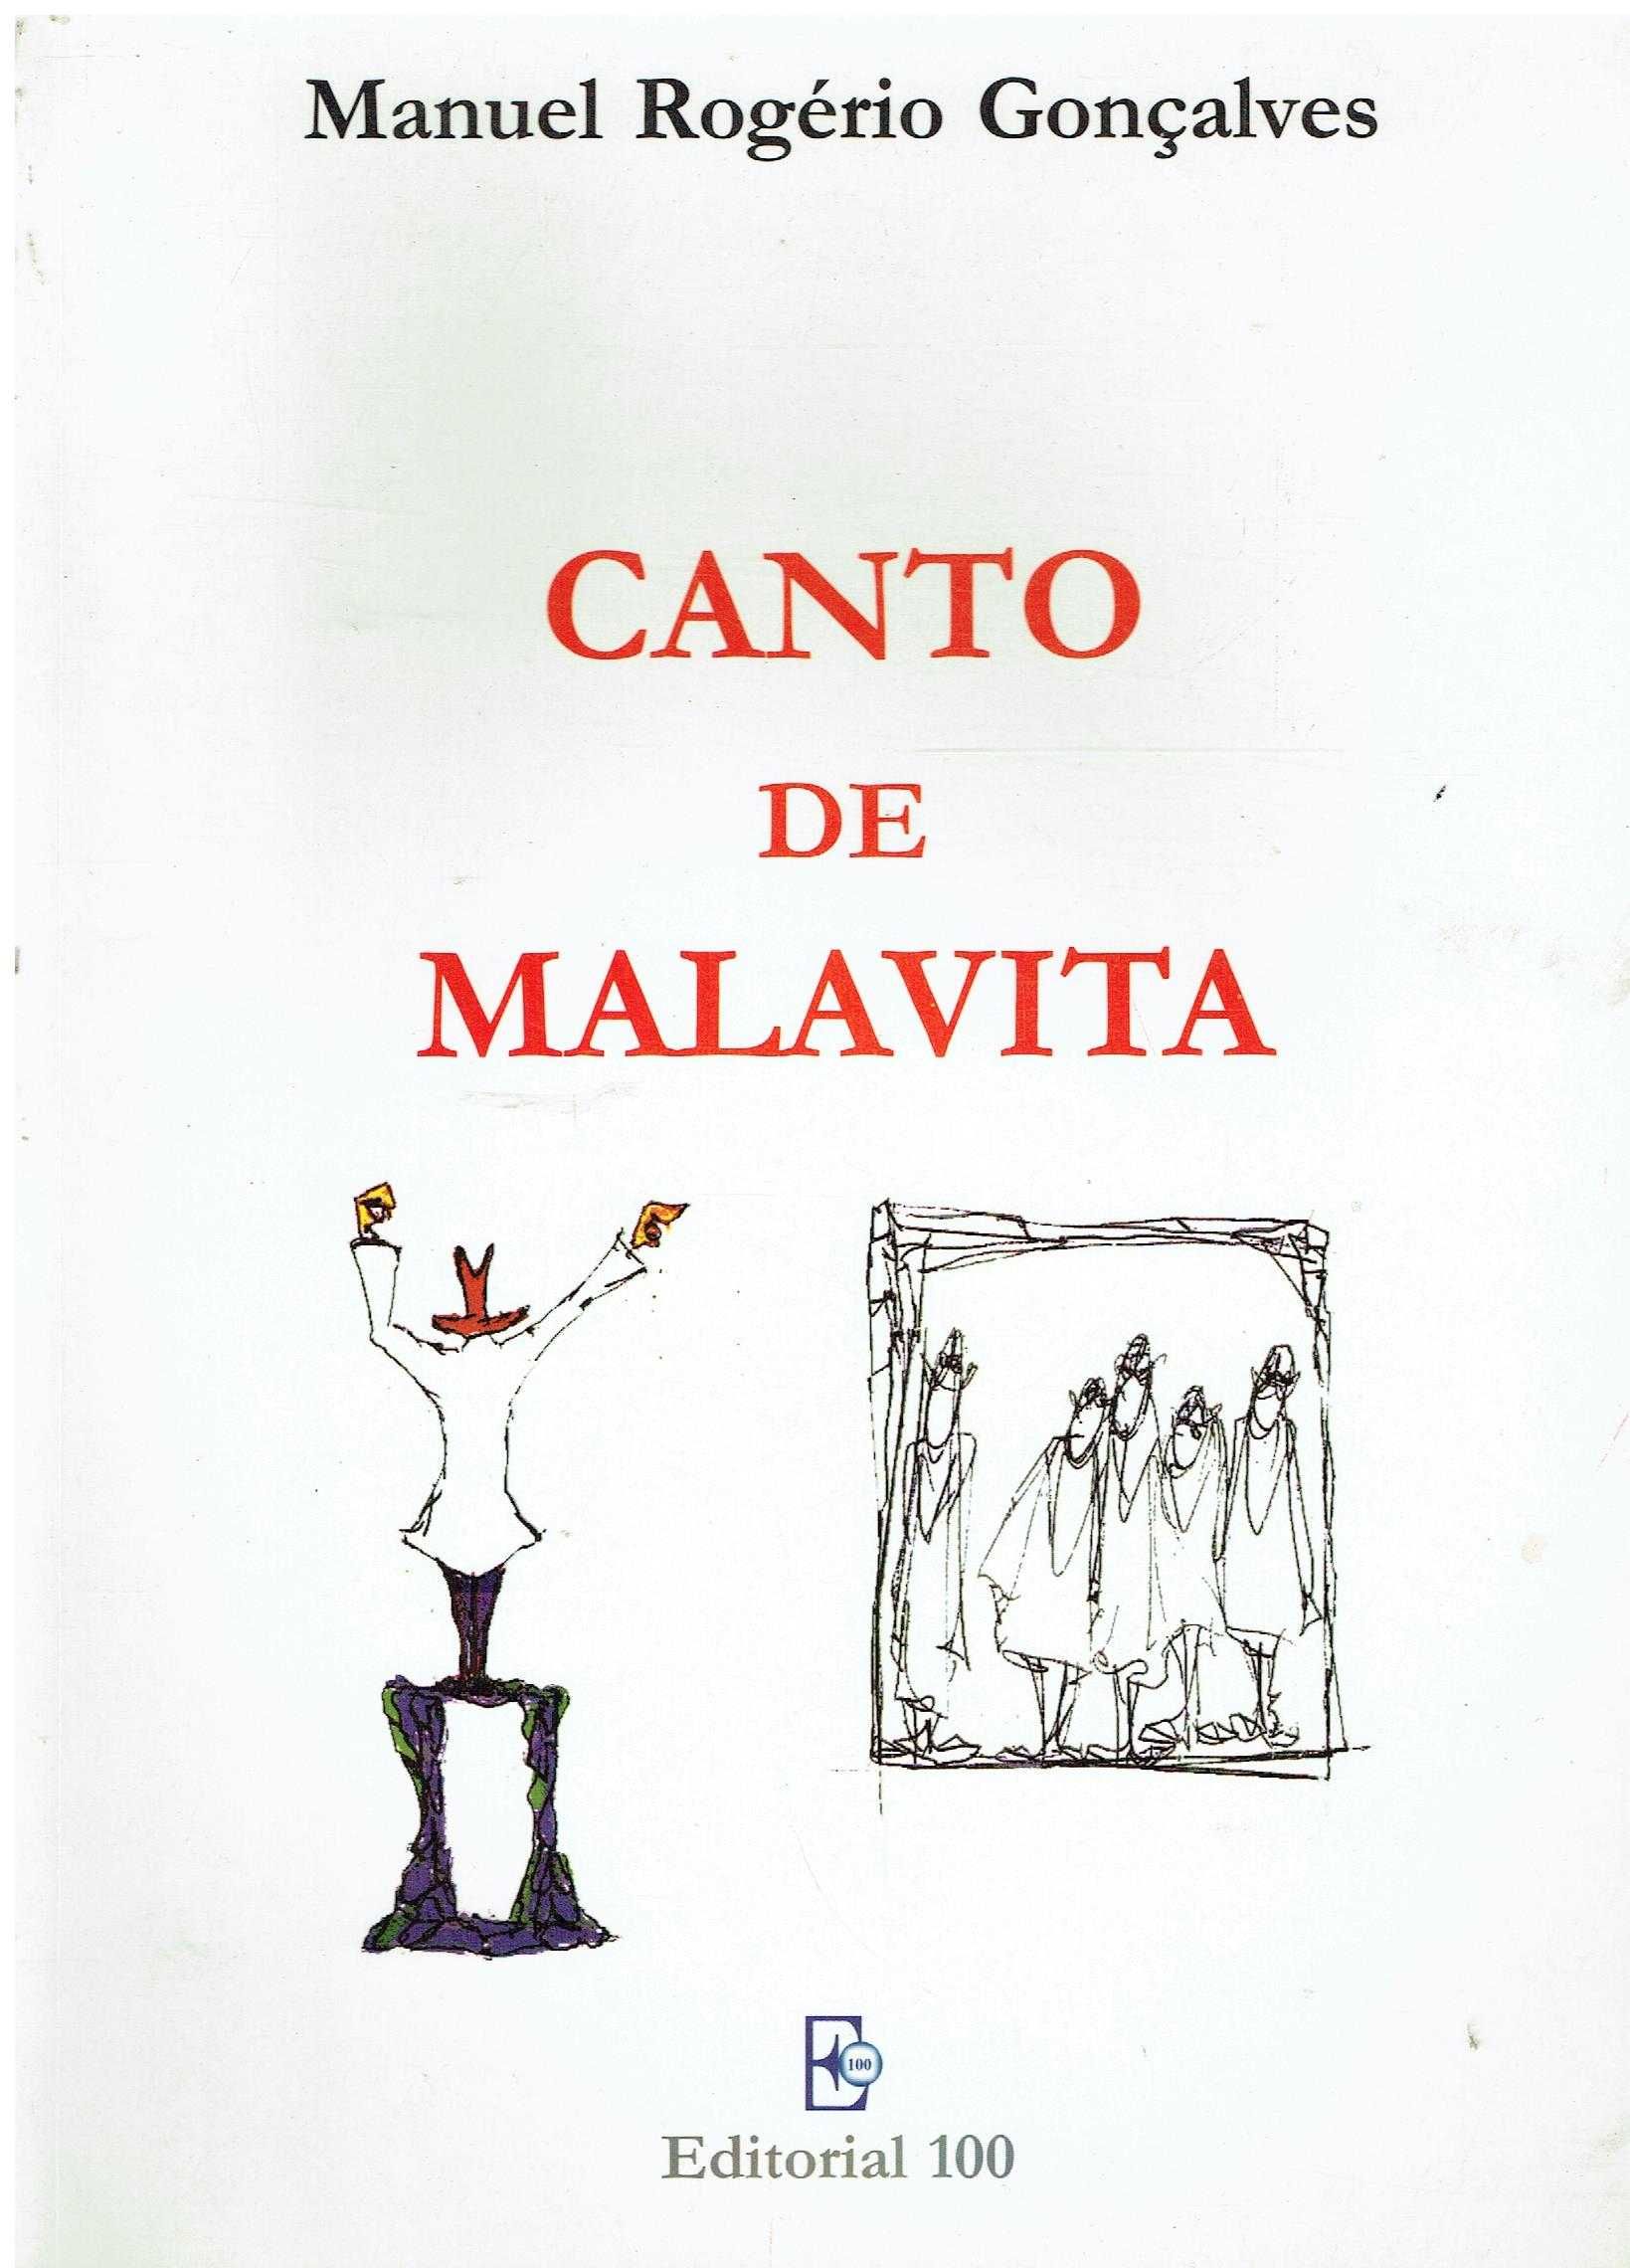 14034

Canto de Malvita 
de Manuel Rogério Gonçalves